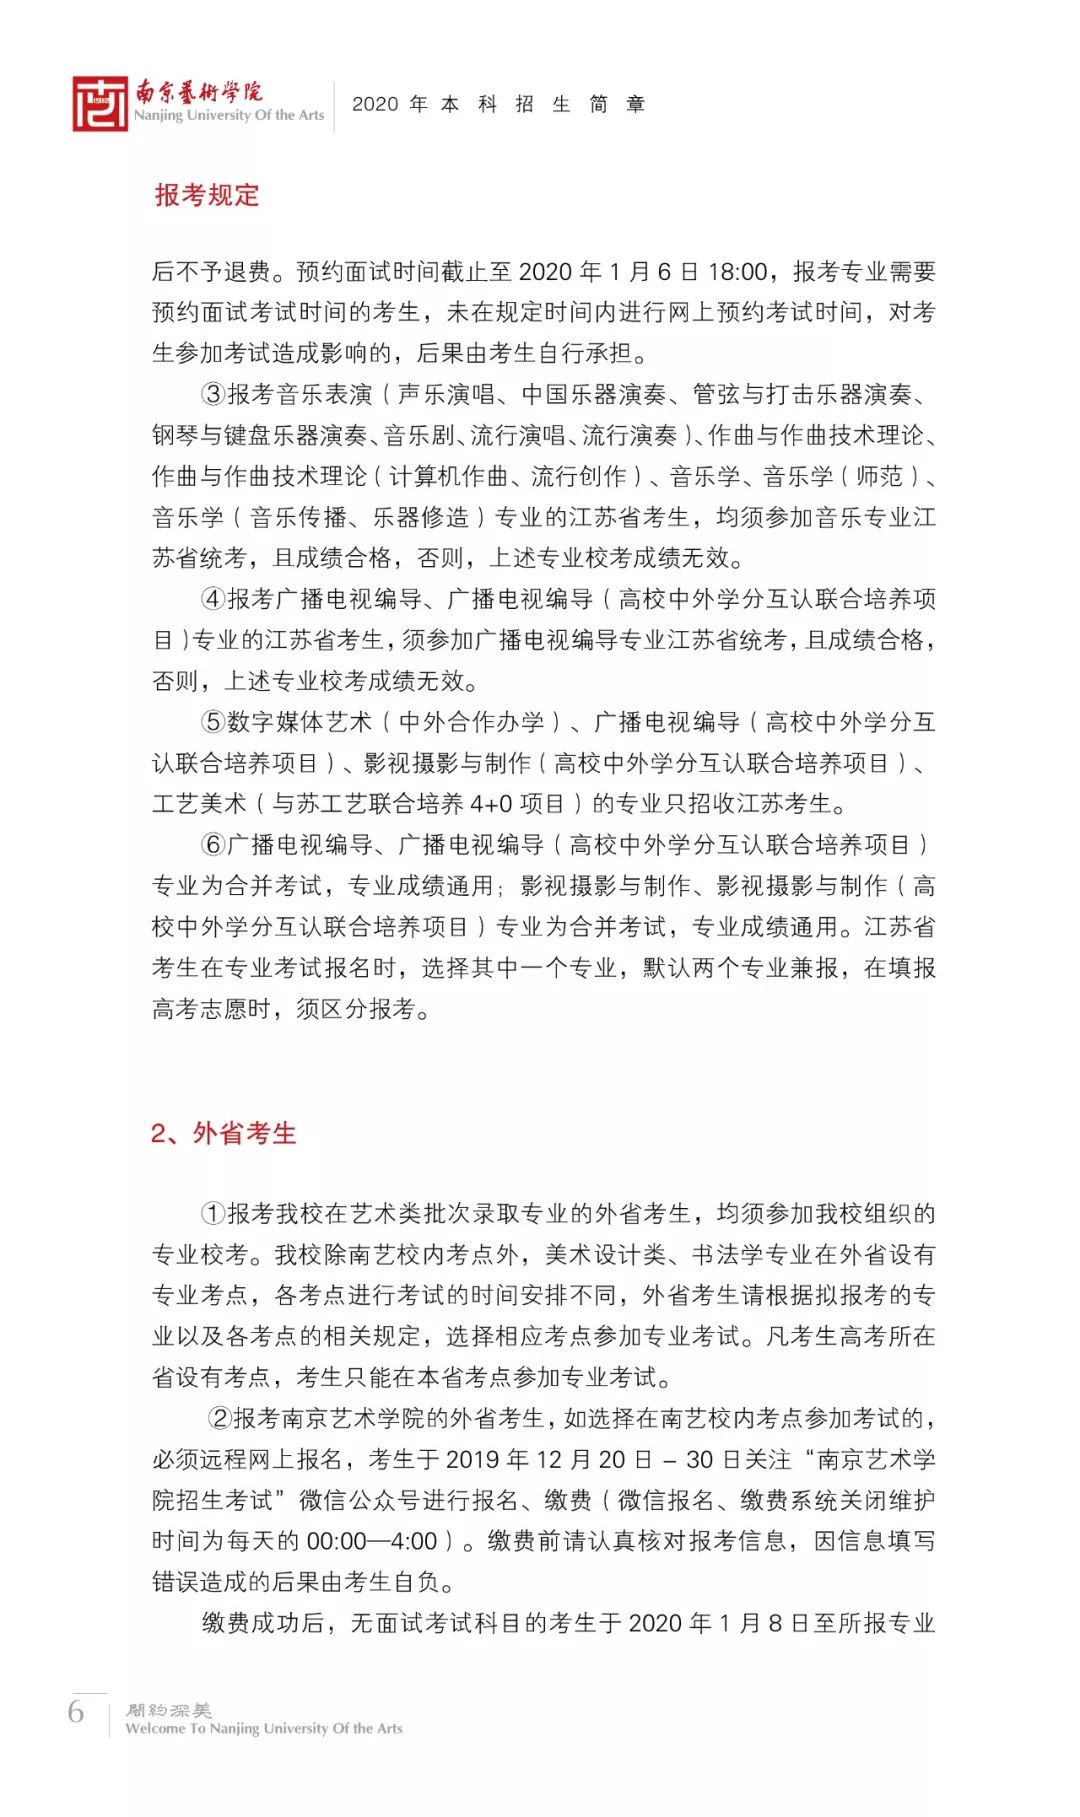 校考指南南京艺术学院2020年本科招生简章